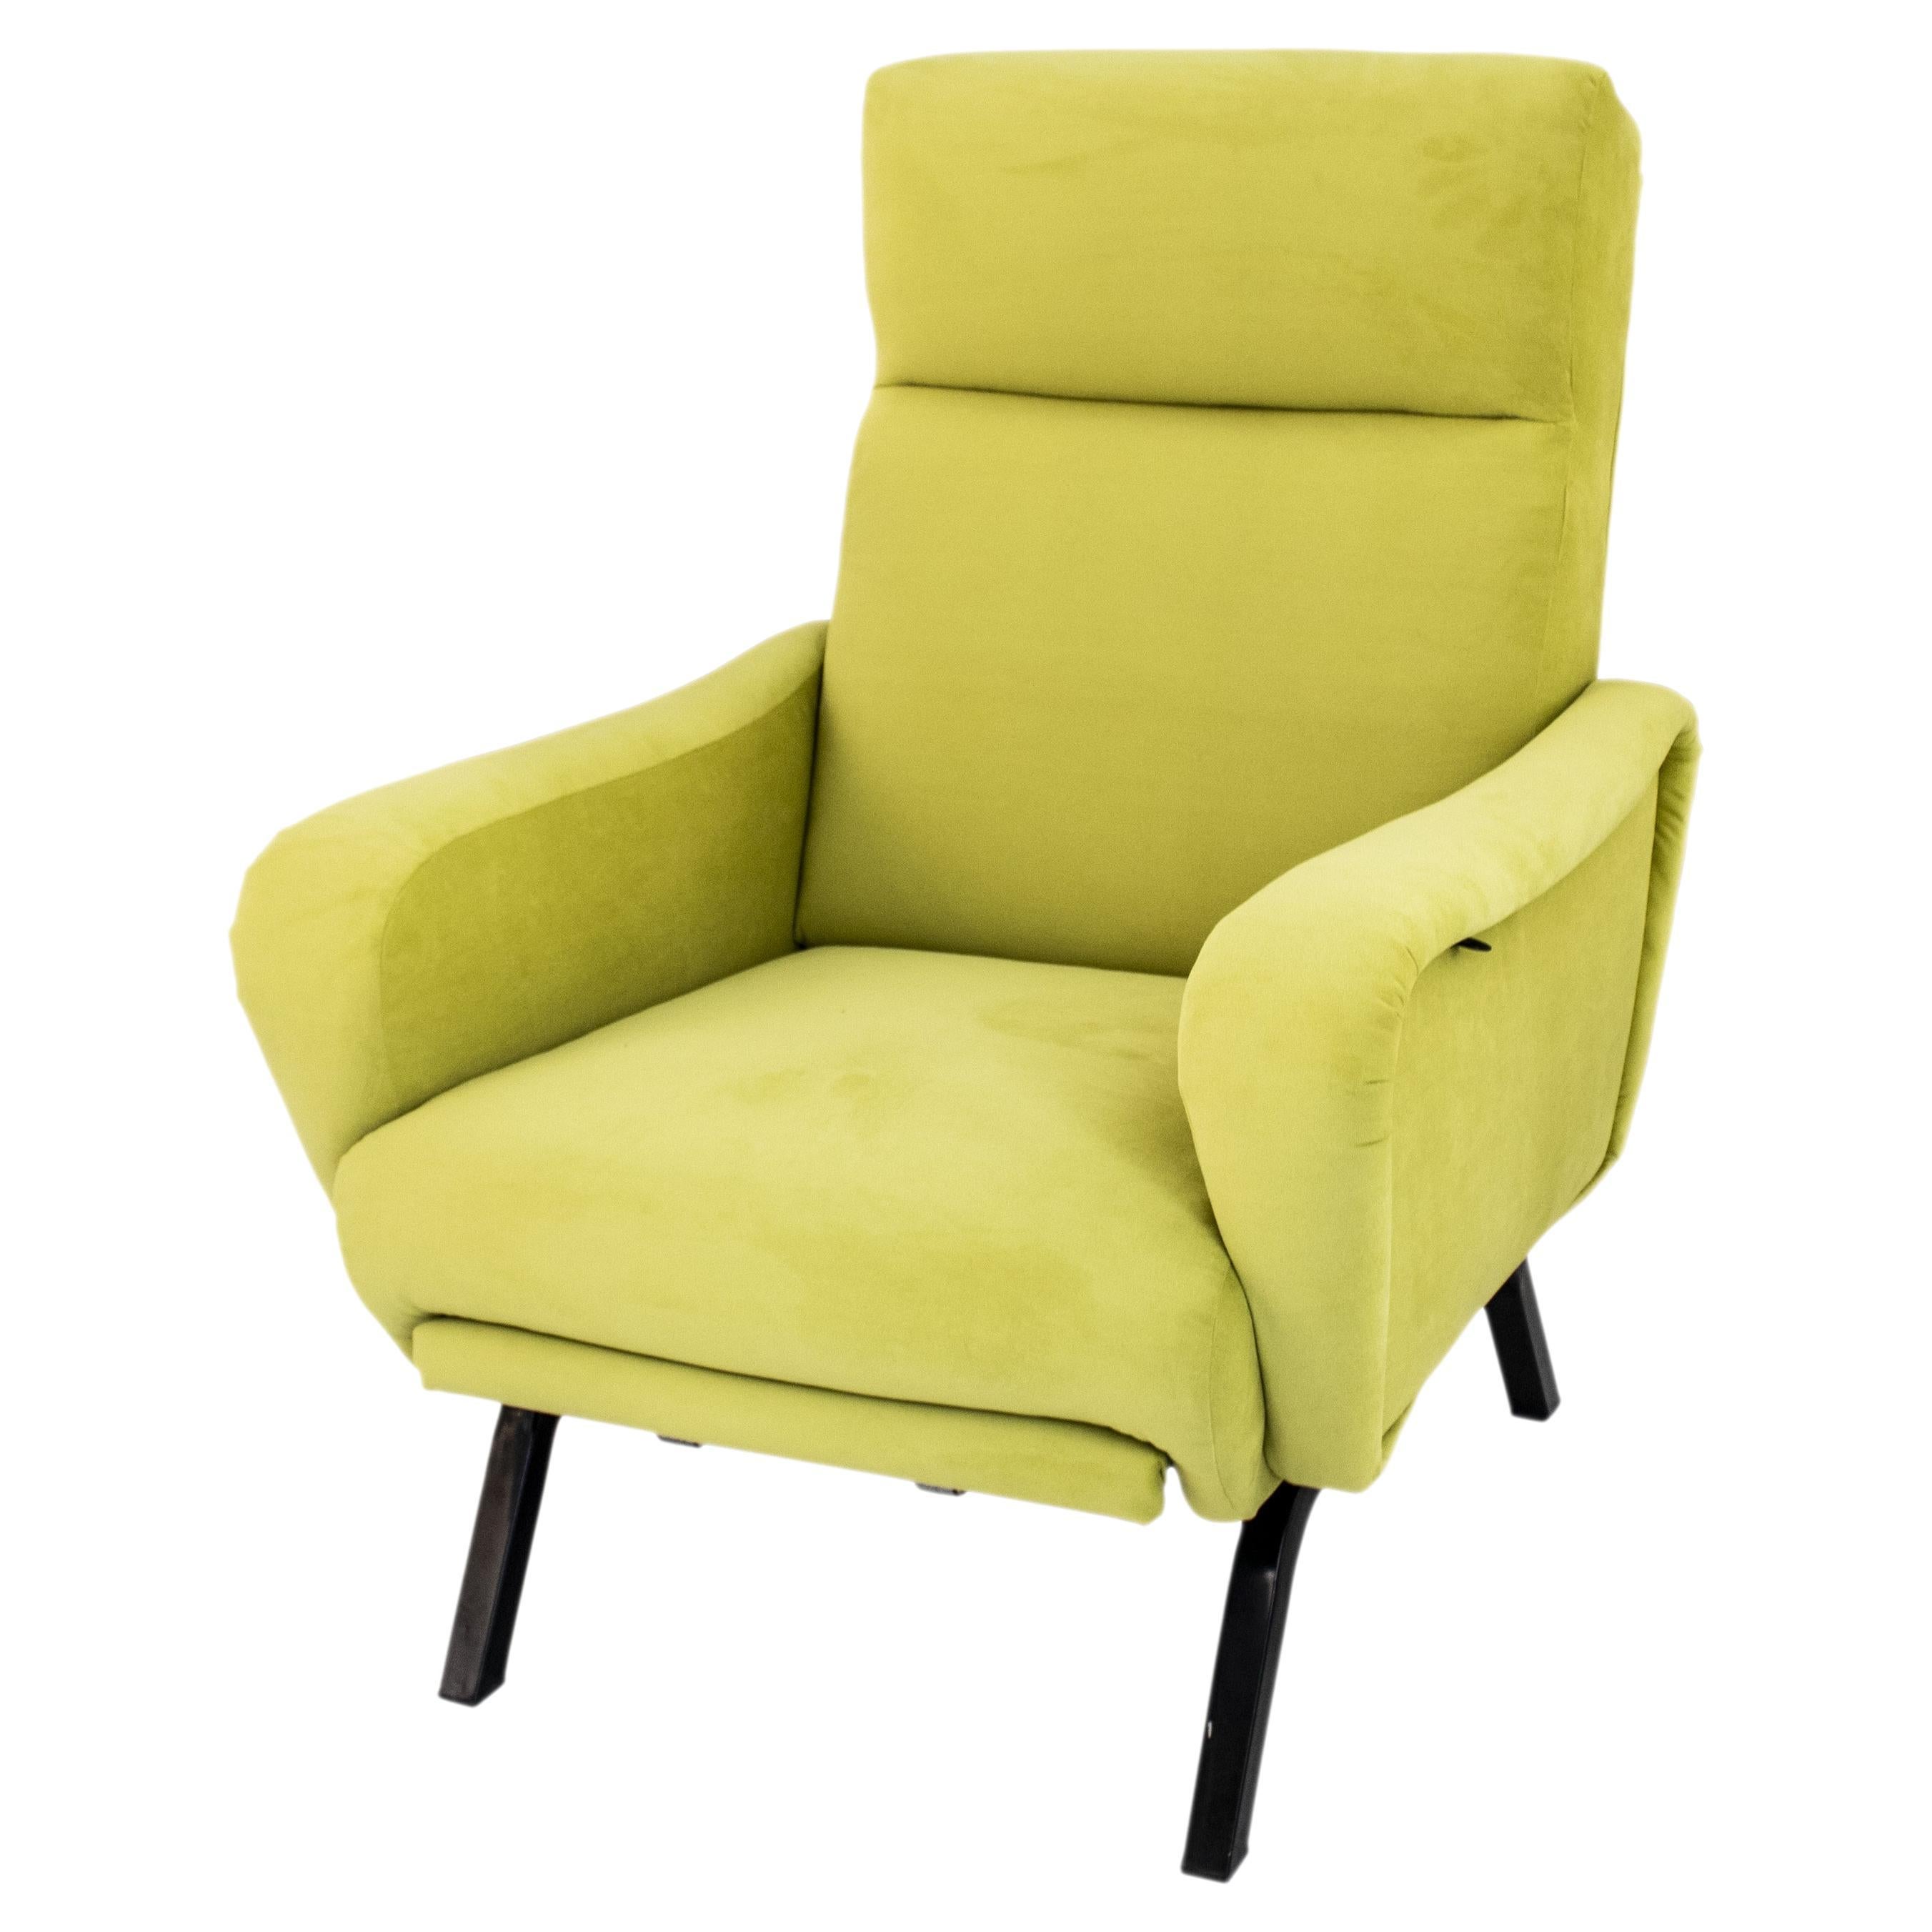 Ce fauteuil inclinable italien est composé d'une structure solide en métal et en bois, recouverte de mousse et tapissée d'un tissu en velours vert vif. 
Il s'agit d'une conception confortable et polyvalente qui permet d'incliner le siège et d'offrir